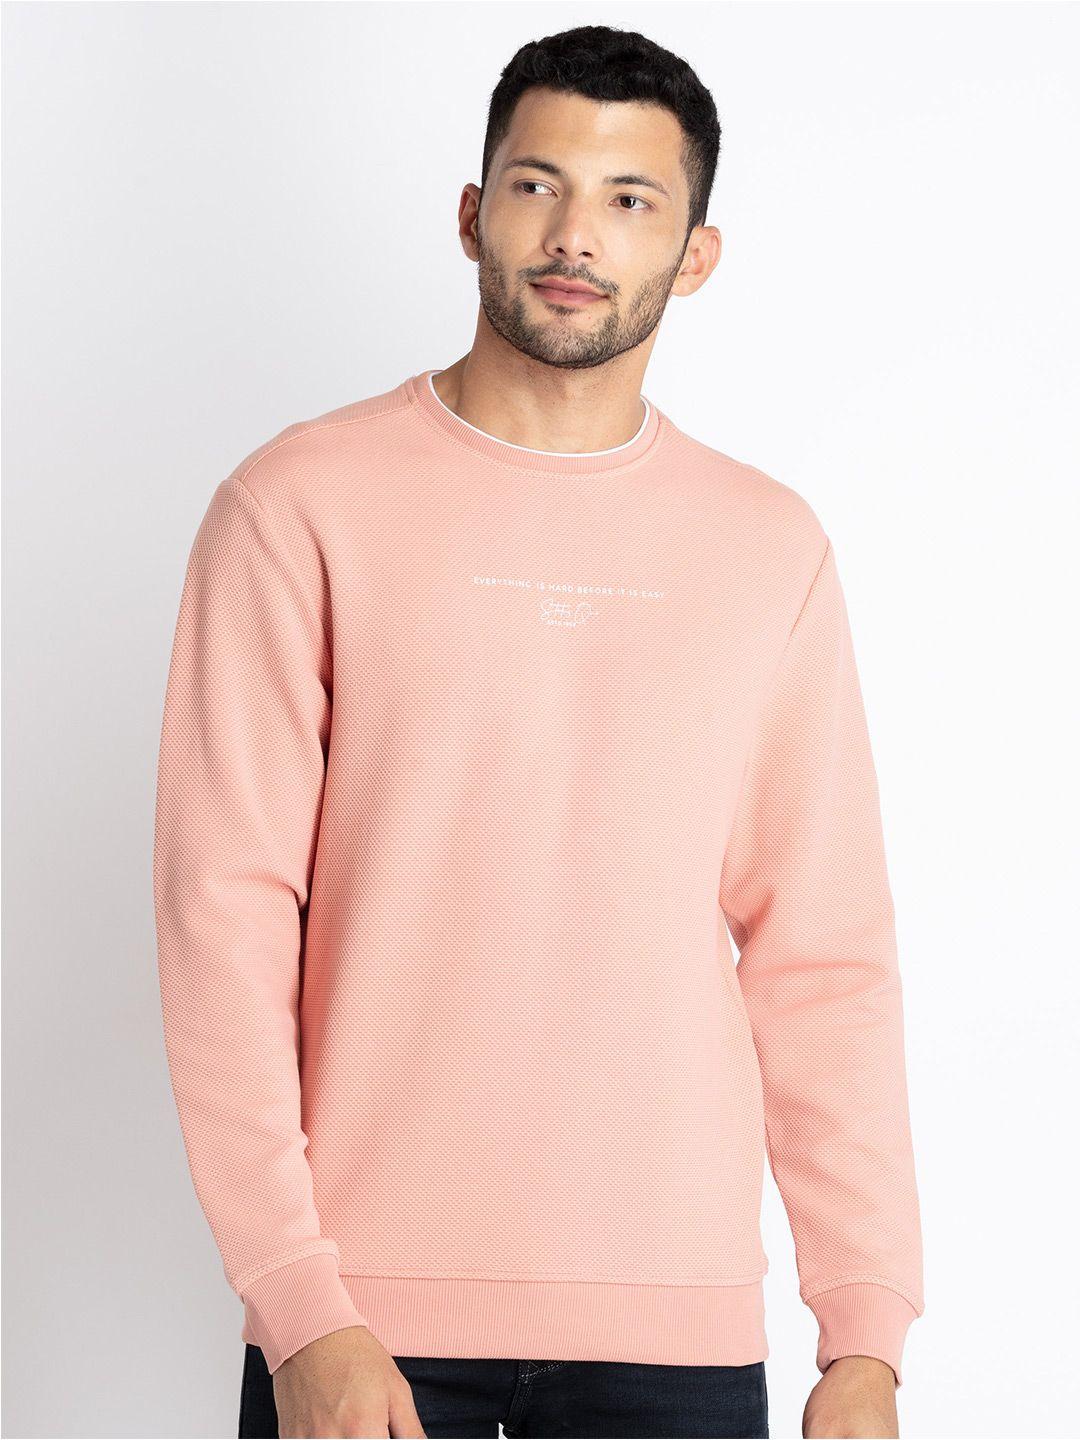 status quo cotton pullover sweatshirt